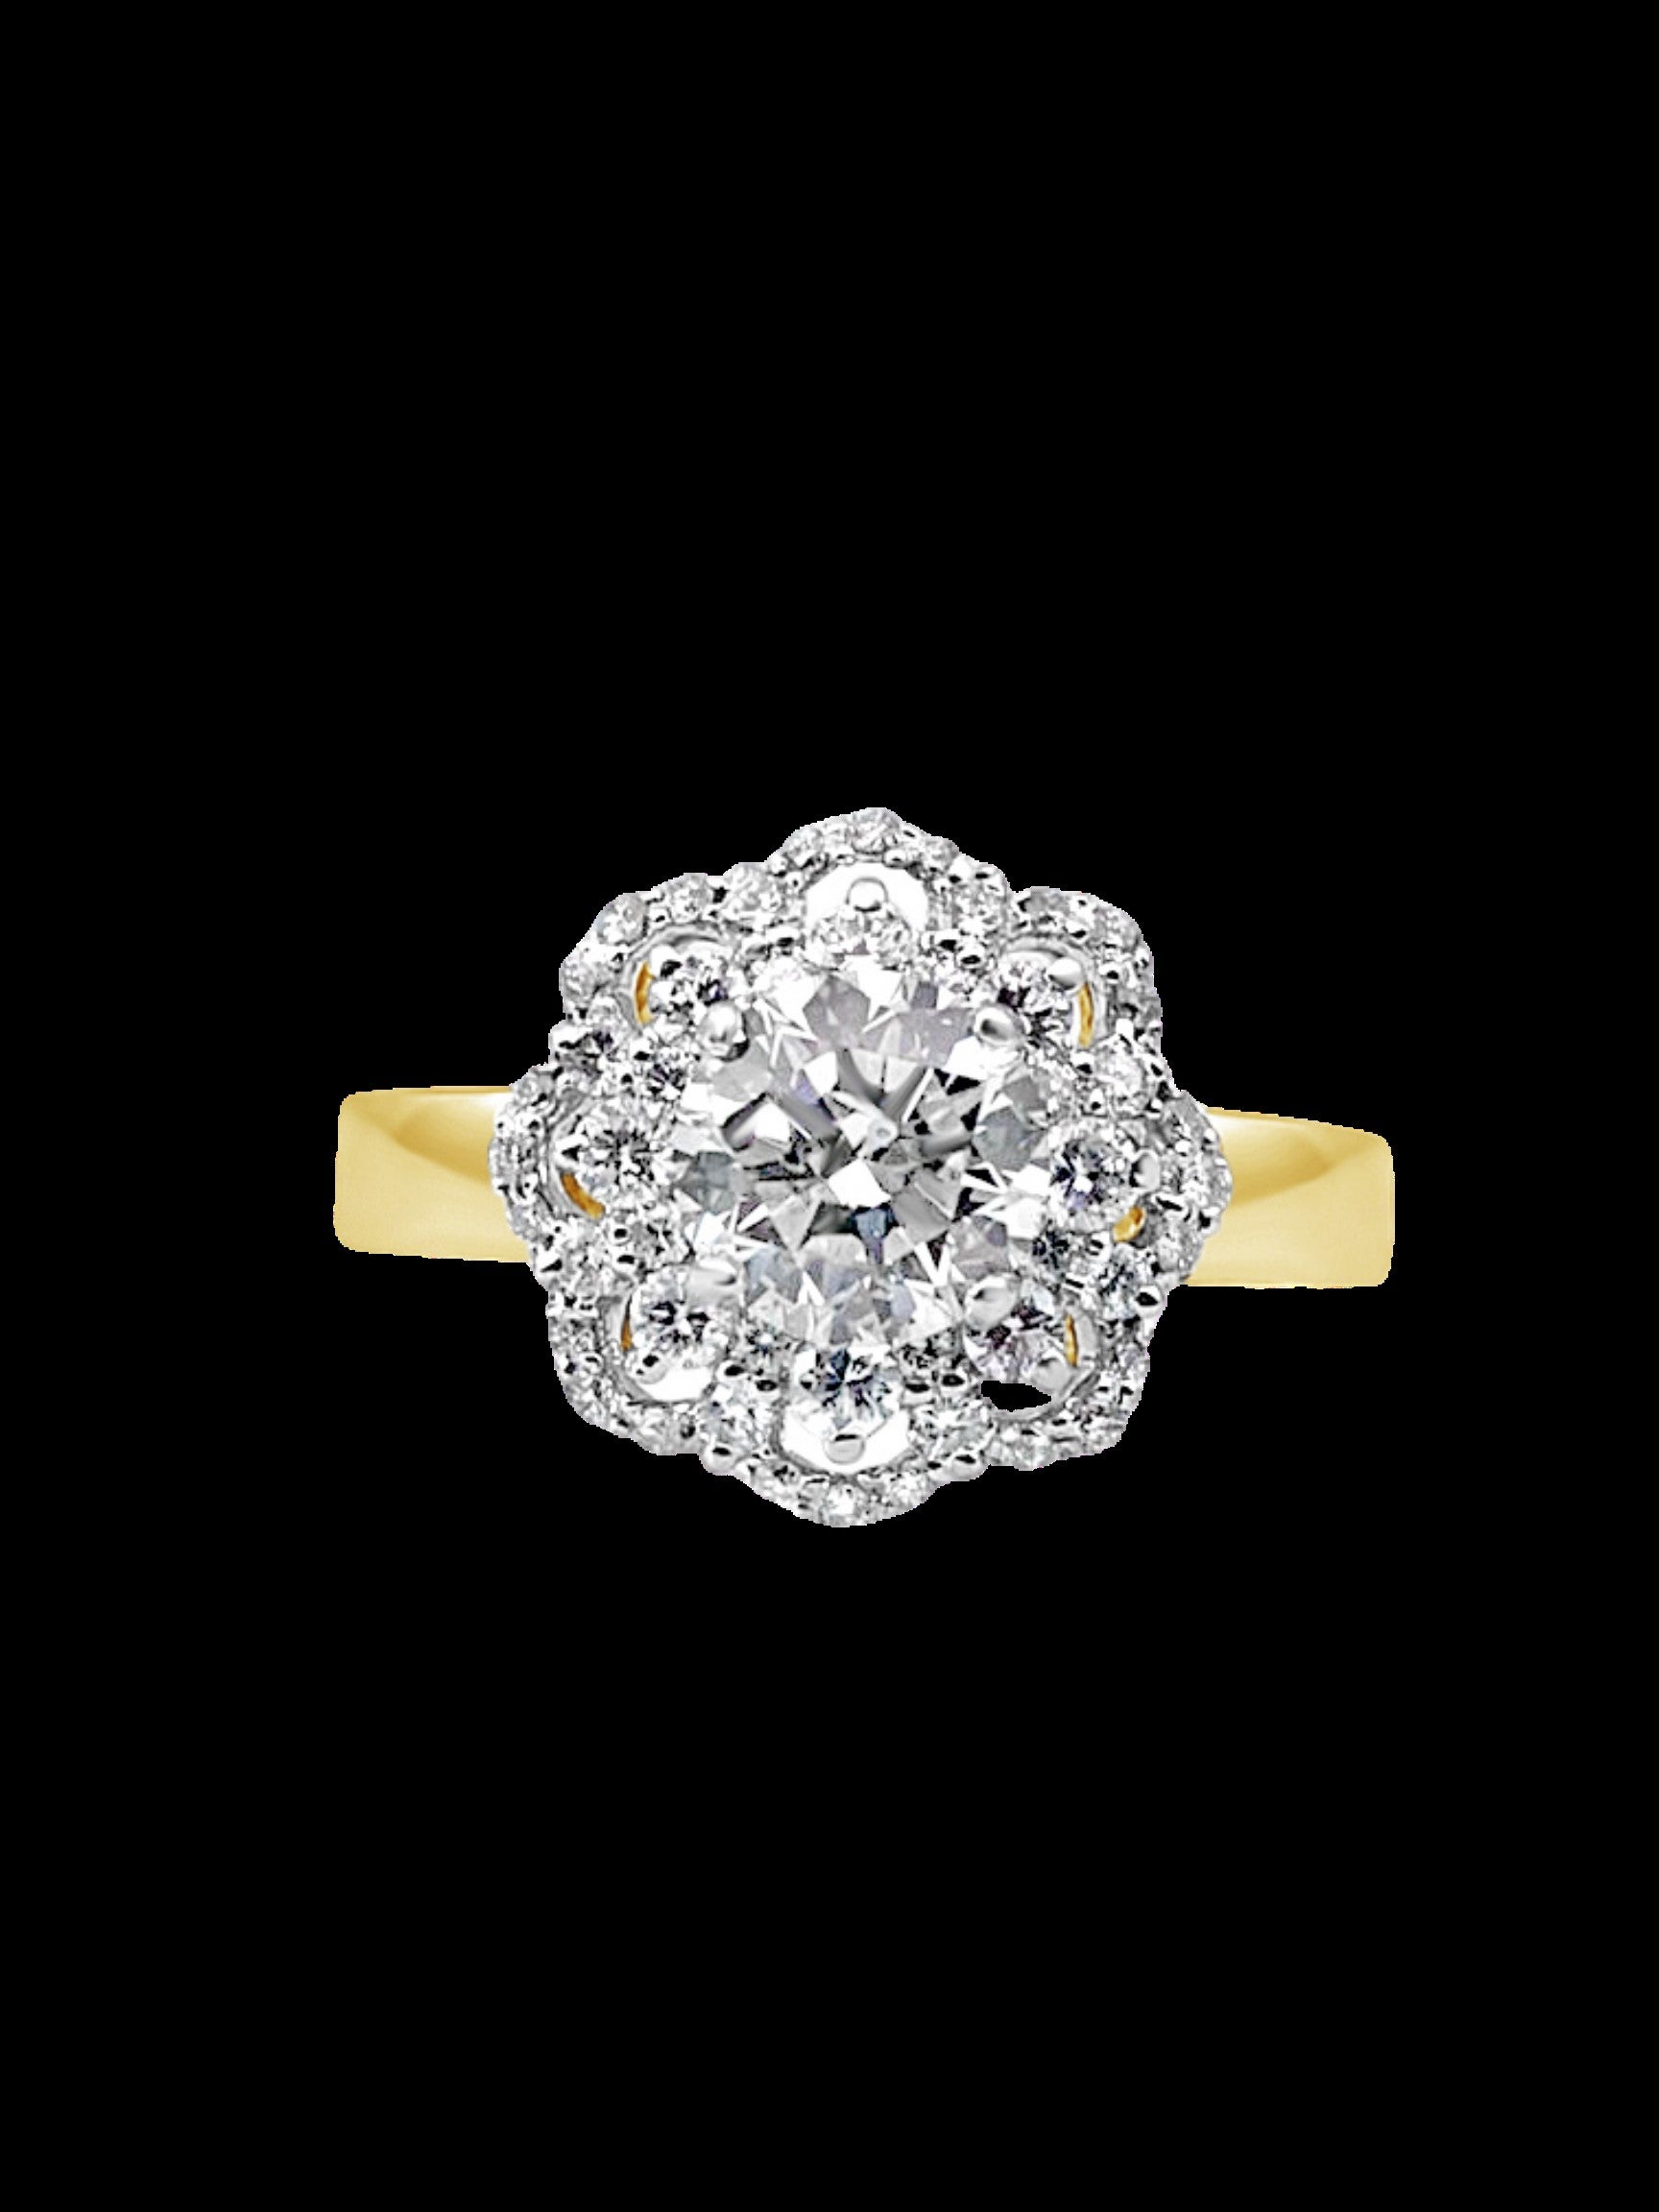 Der Lona-Diamantring besteht aus einem 1,03-karätigen Solitär-Diamant in der Mitte, umgeben von einem diamantbesetzten Goldband aus 18 Karat Gelbgold. Ein schöner Akzentring, zart und doch schillernd, oder der ganz besondere Verlobungsring für die